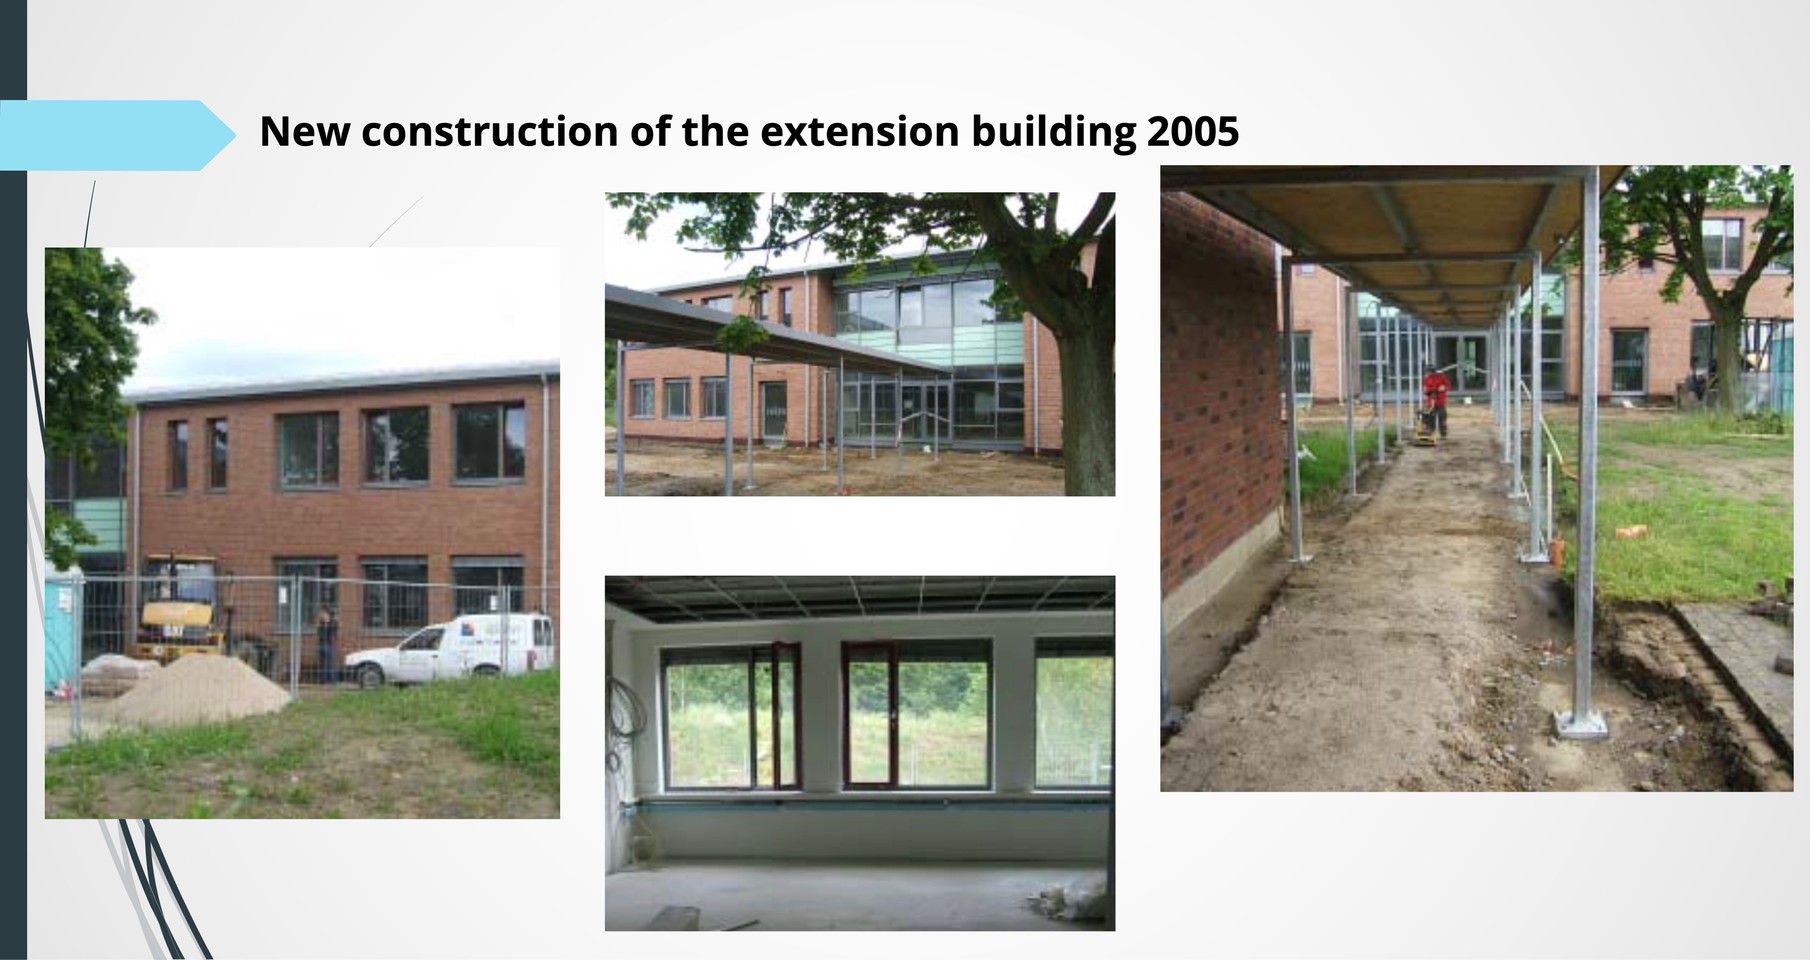 Eine Baustelle beim Neubau des Erweiterungsgebäudes, man sieht die Baustelle sowohl von innen als auch von außen